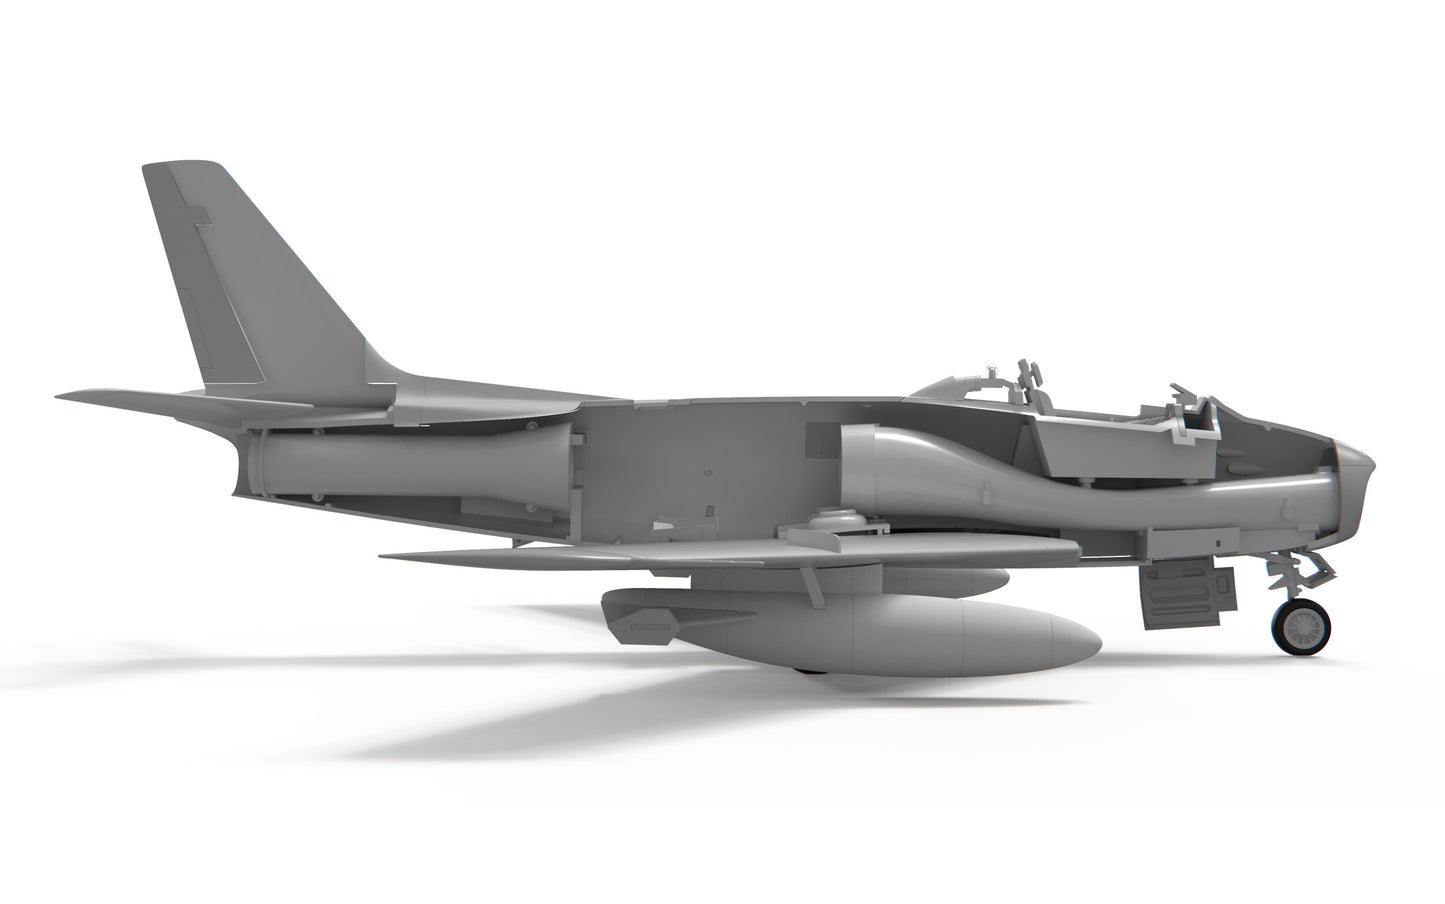 Airfix 1/48th scale Canadair Sabre F.4